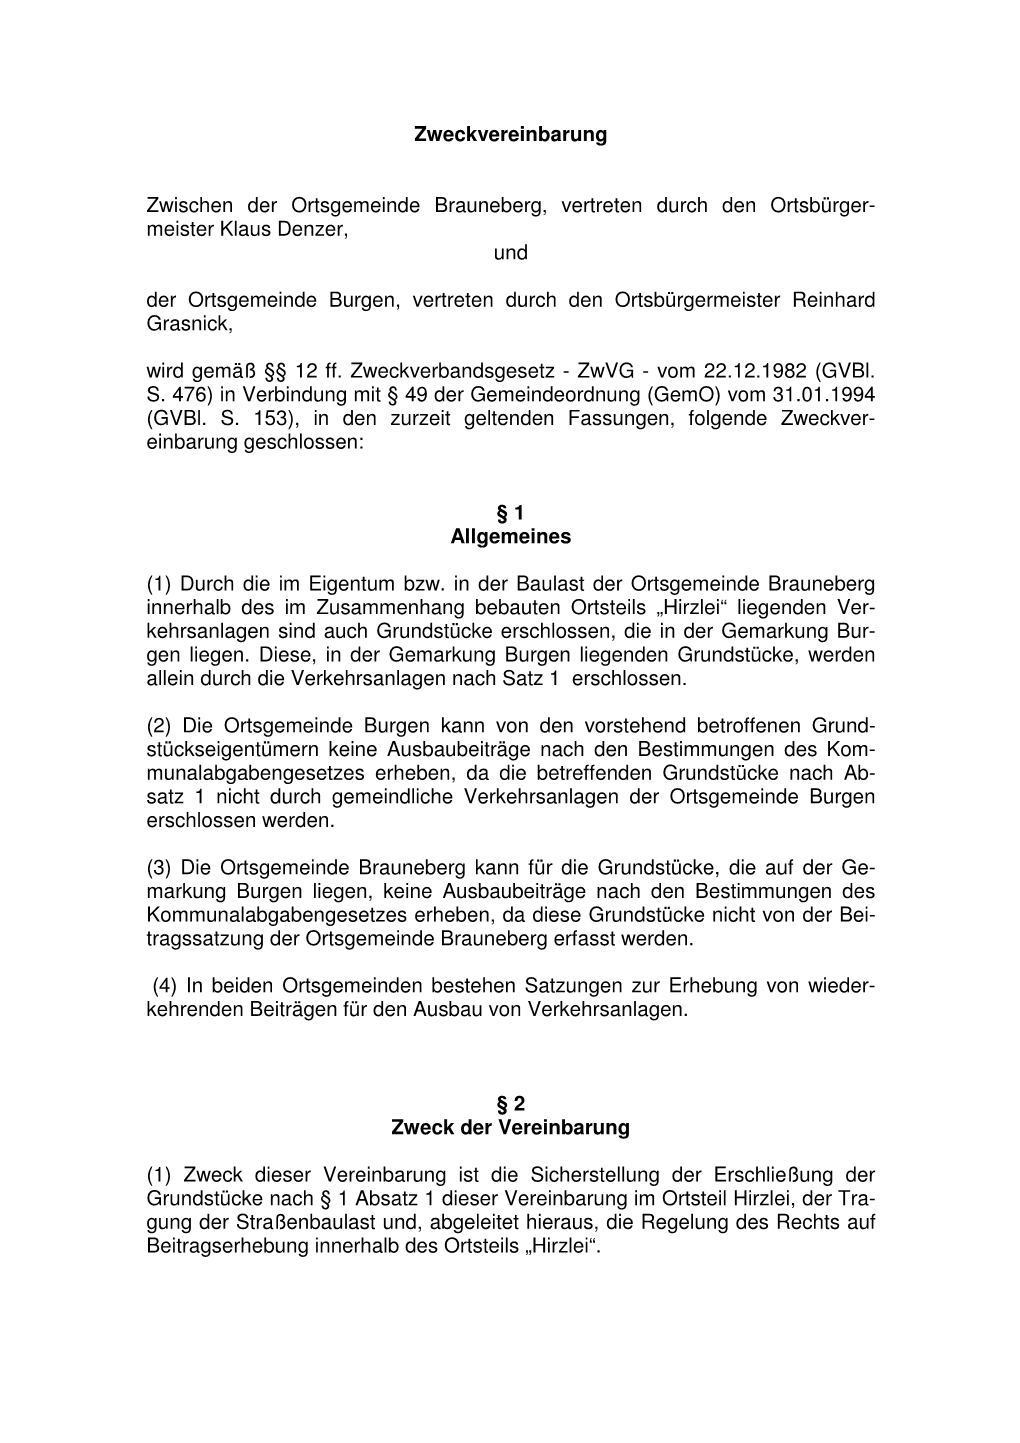 16. Zweckvereinbarung OG Brauneberg-Burgen in Sachen Wkb VKA Hirzlei Vom 20090105 Und 20090107